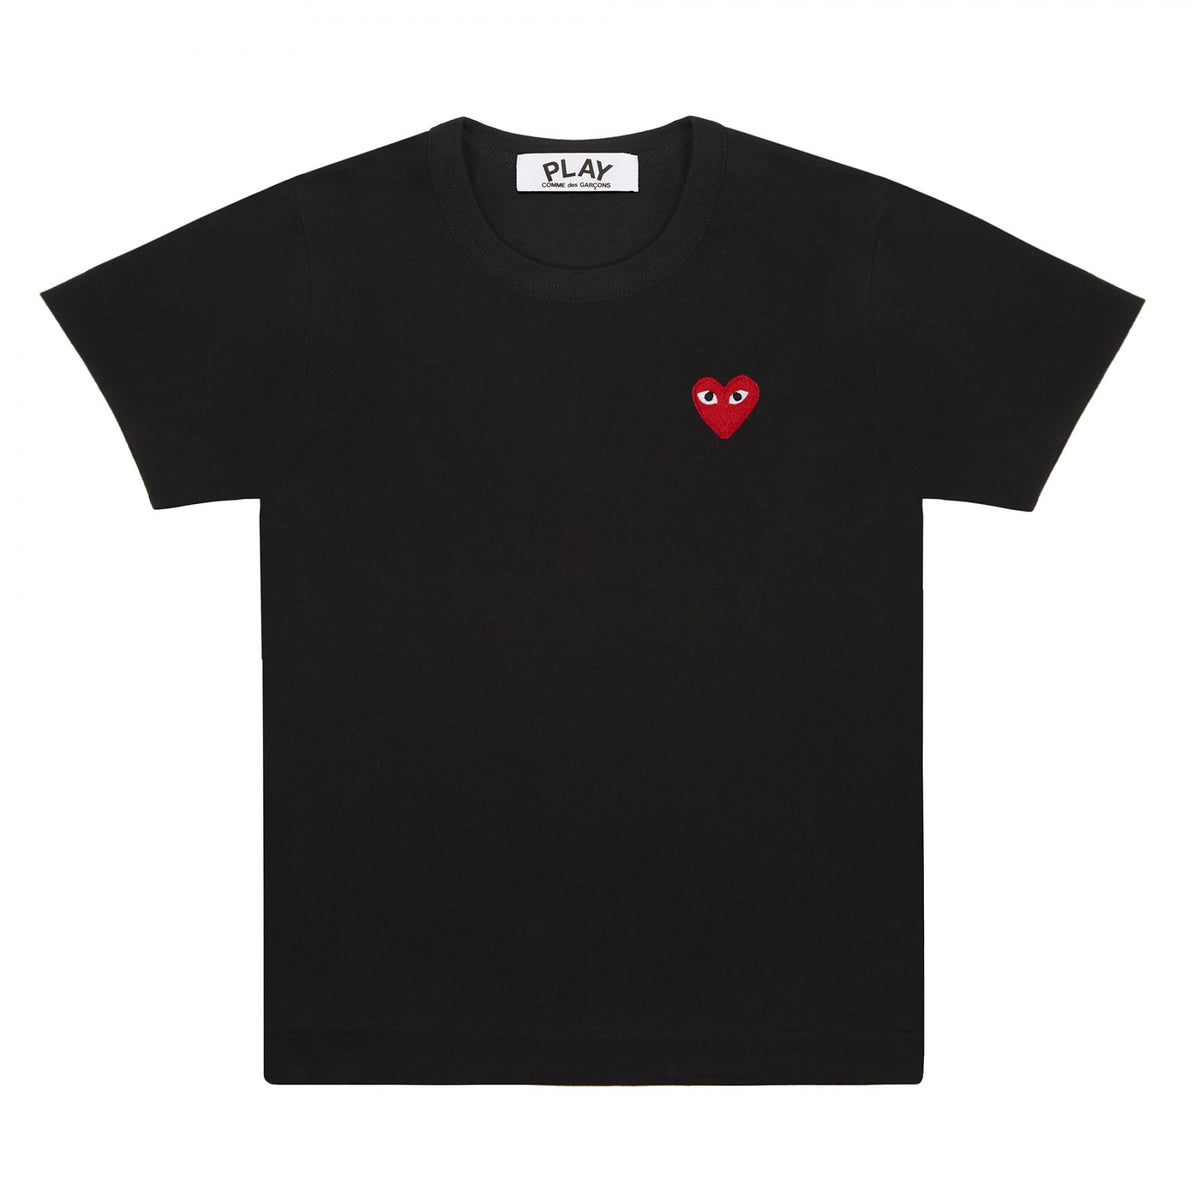 Play Comme des Garçons T-Shirt - Black / Red Heart Emblem